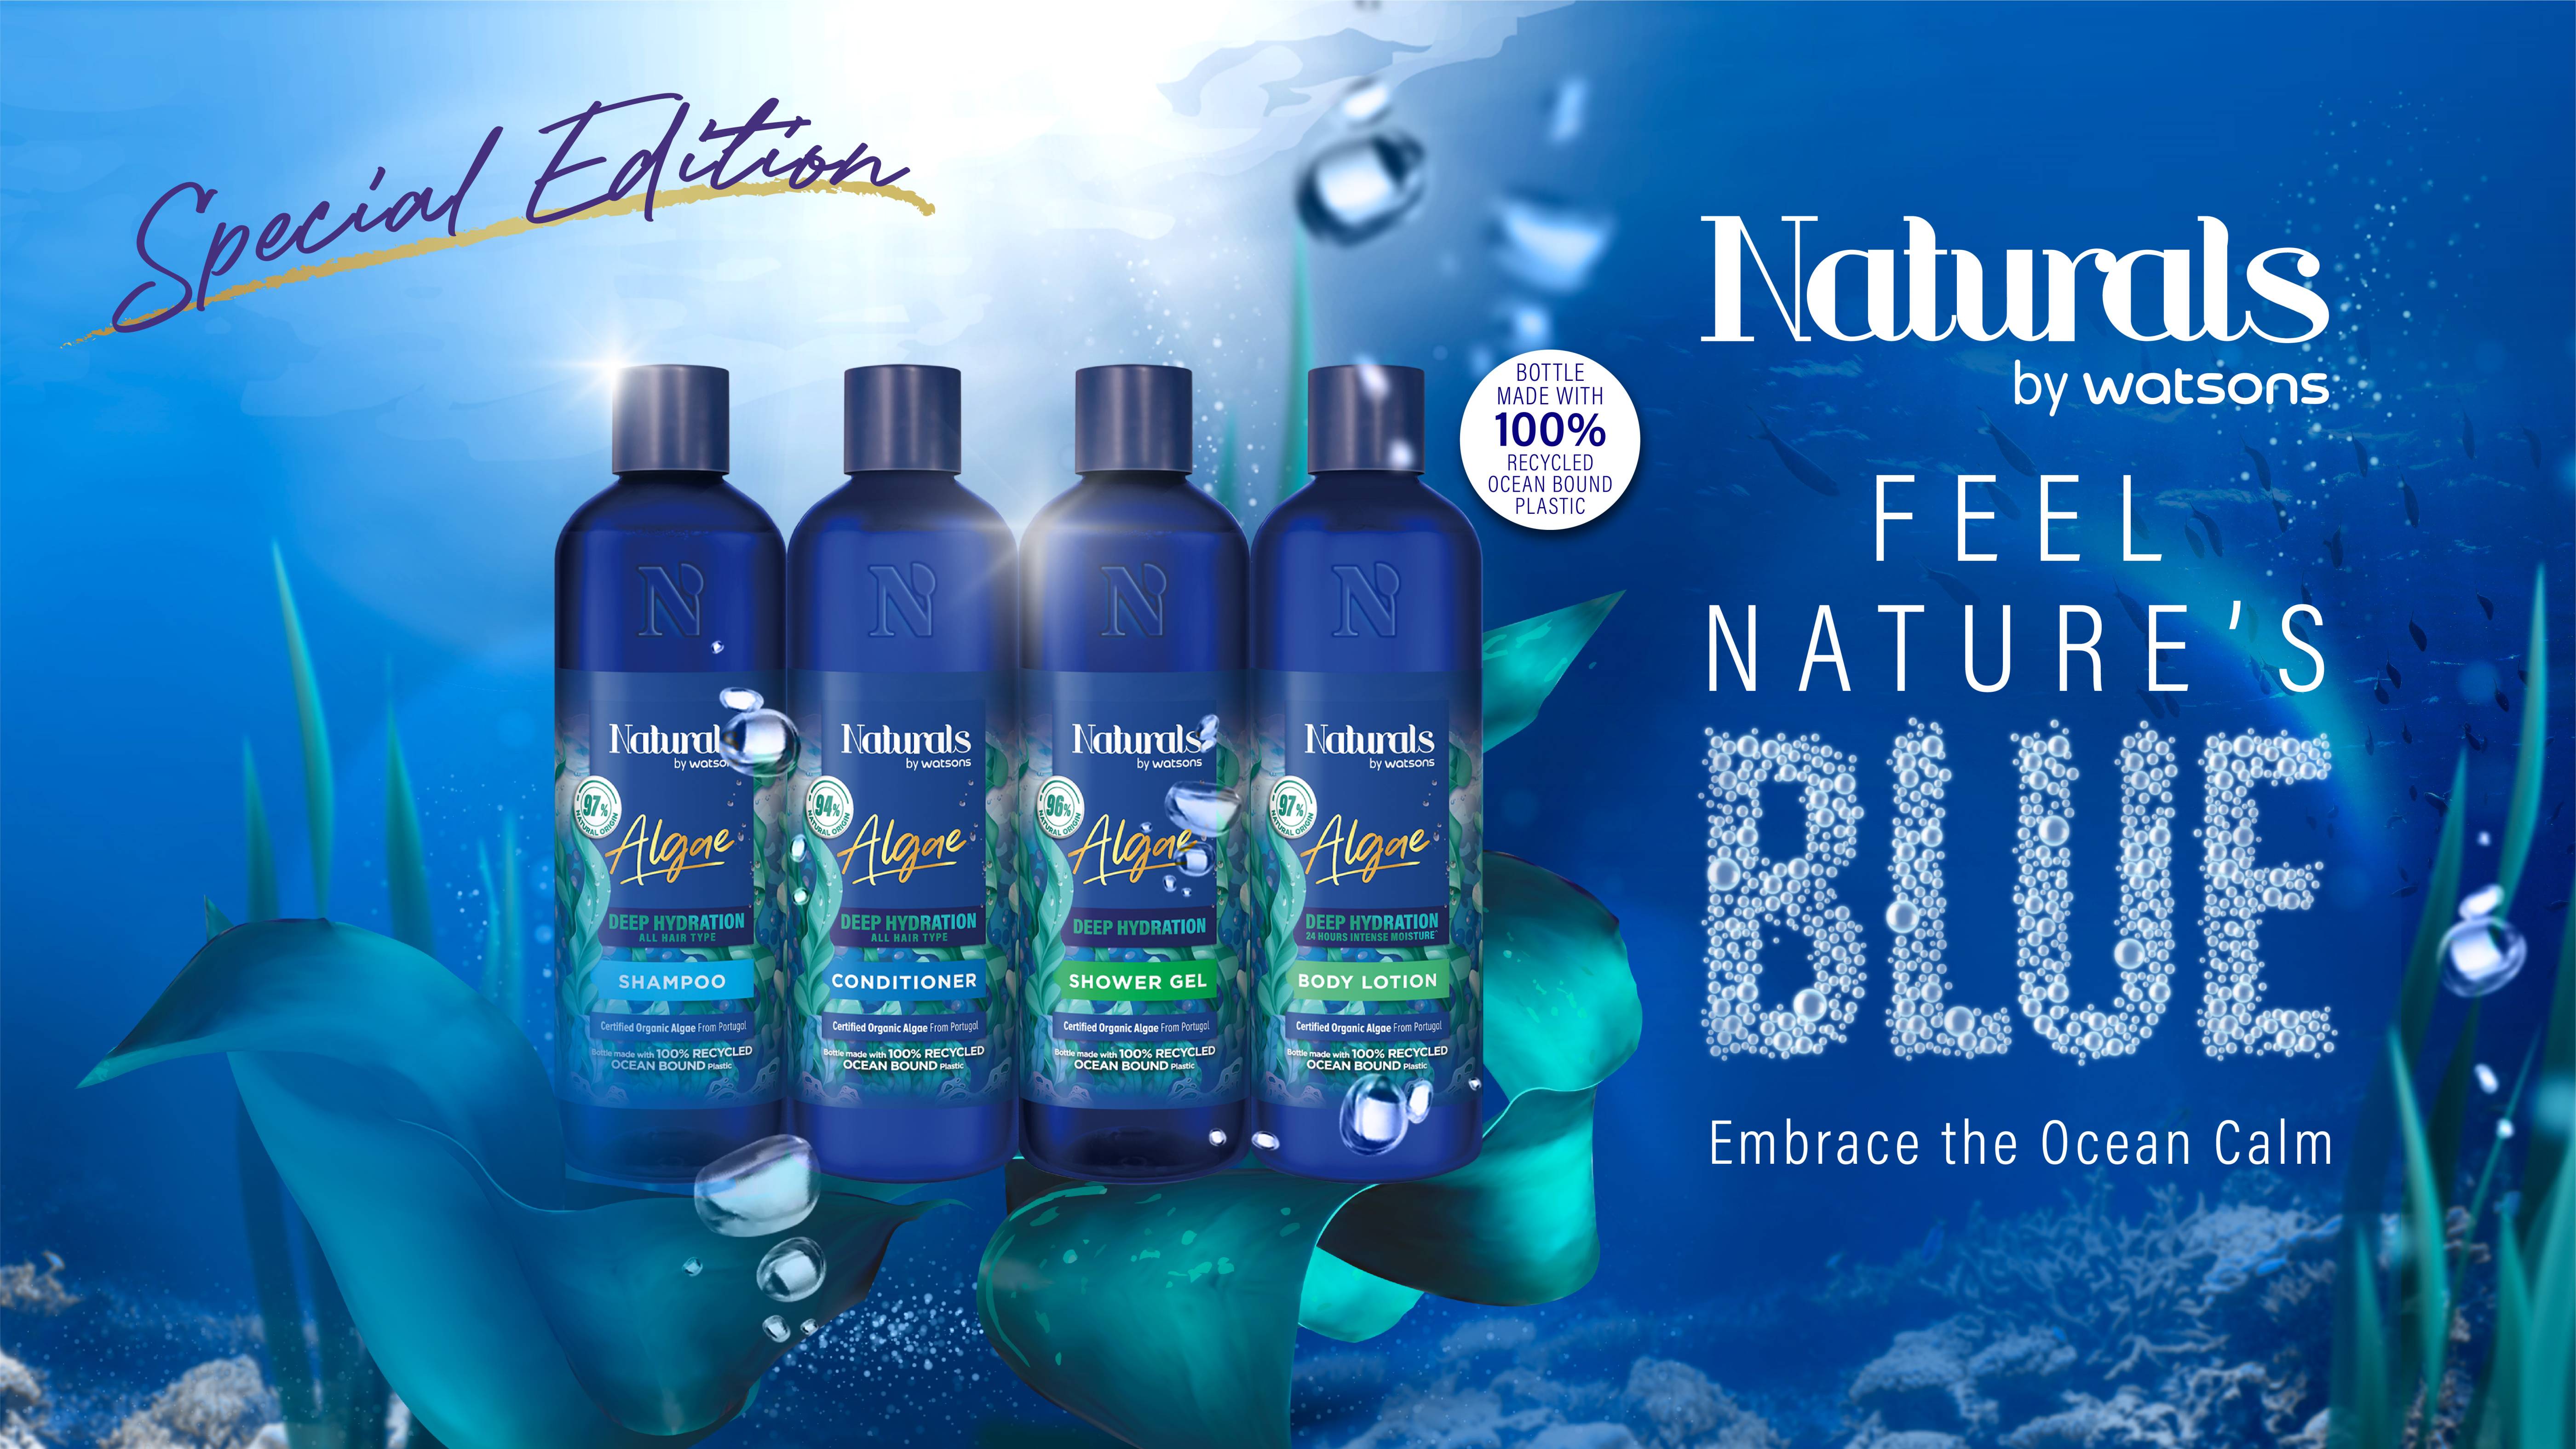 วัตสัน มุ่งรณรงค์ลดขยะพลาสติก เปิดตัว ‘Naturals by Watsons Blue Beauty Range’ ผลิตภัณฑ์ใหม่ล่าสุดที่เป็นมิตรต่อสิ่งแวดล้อม